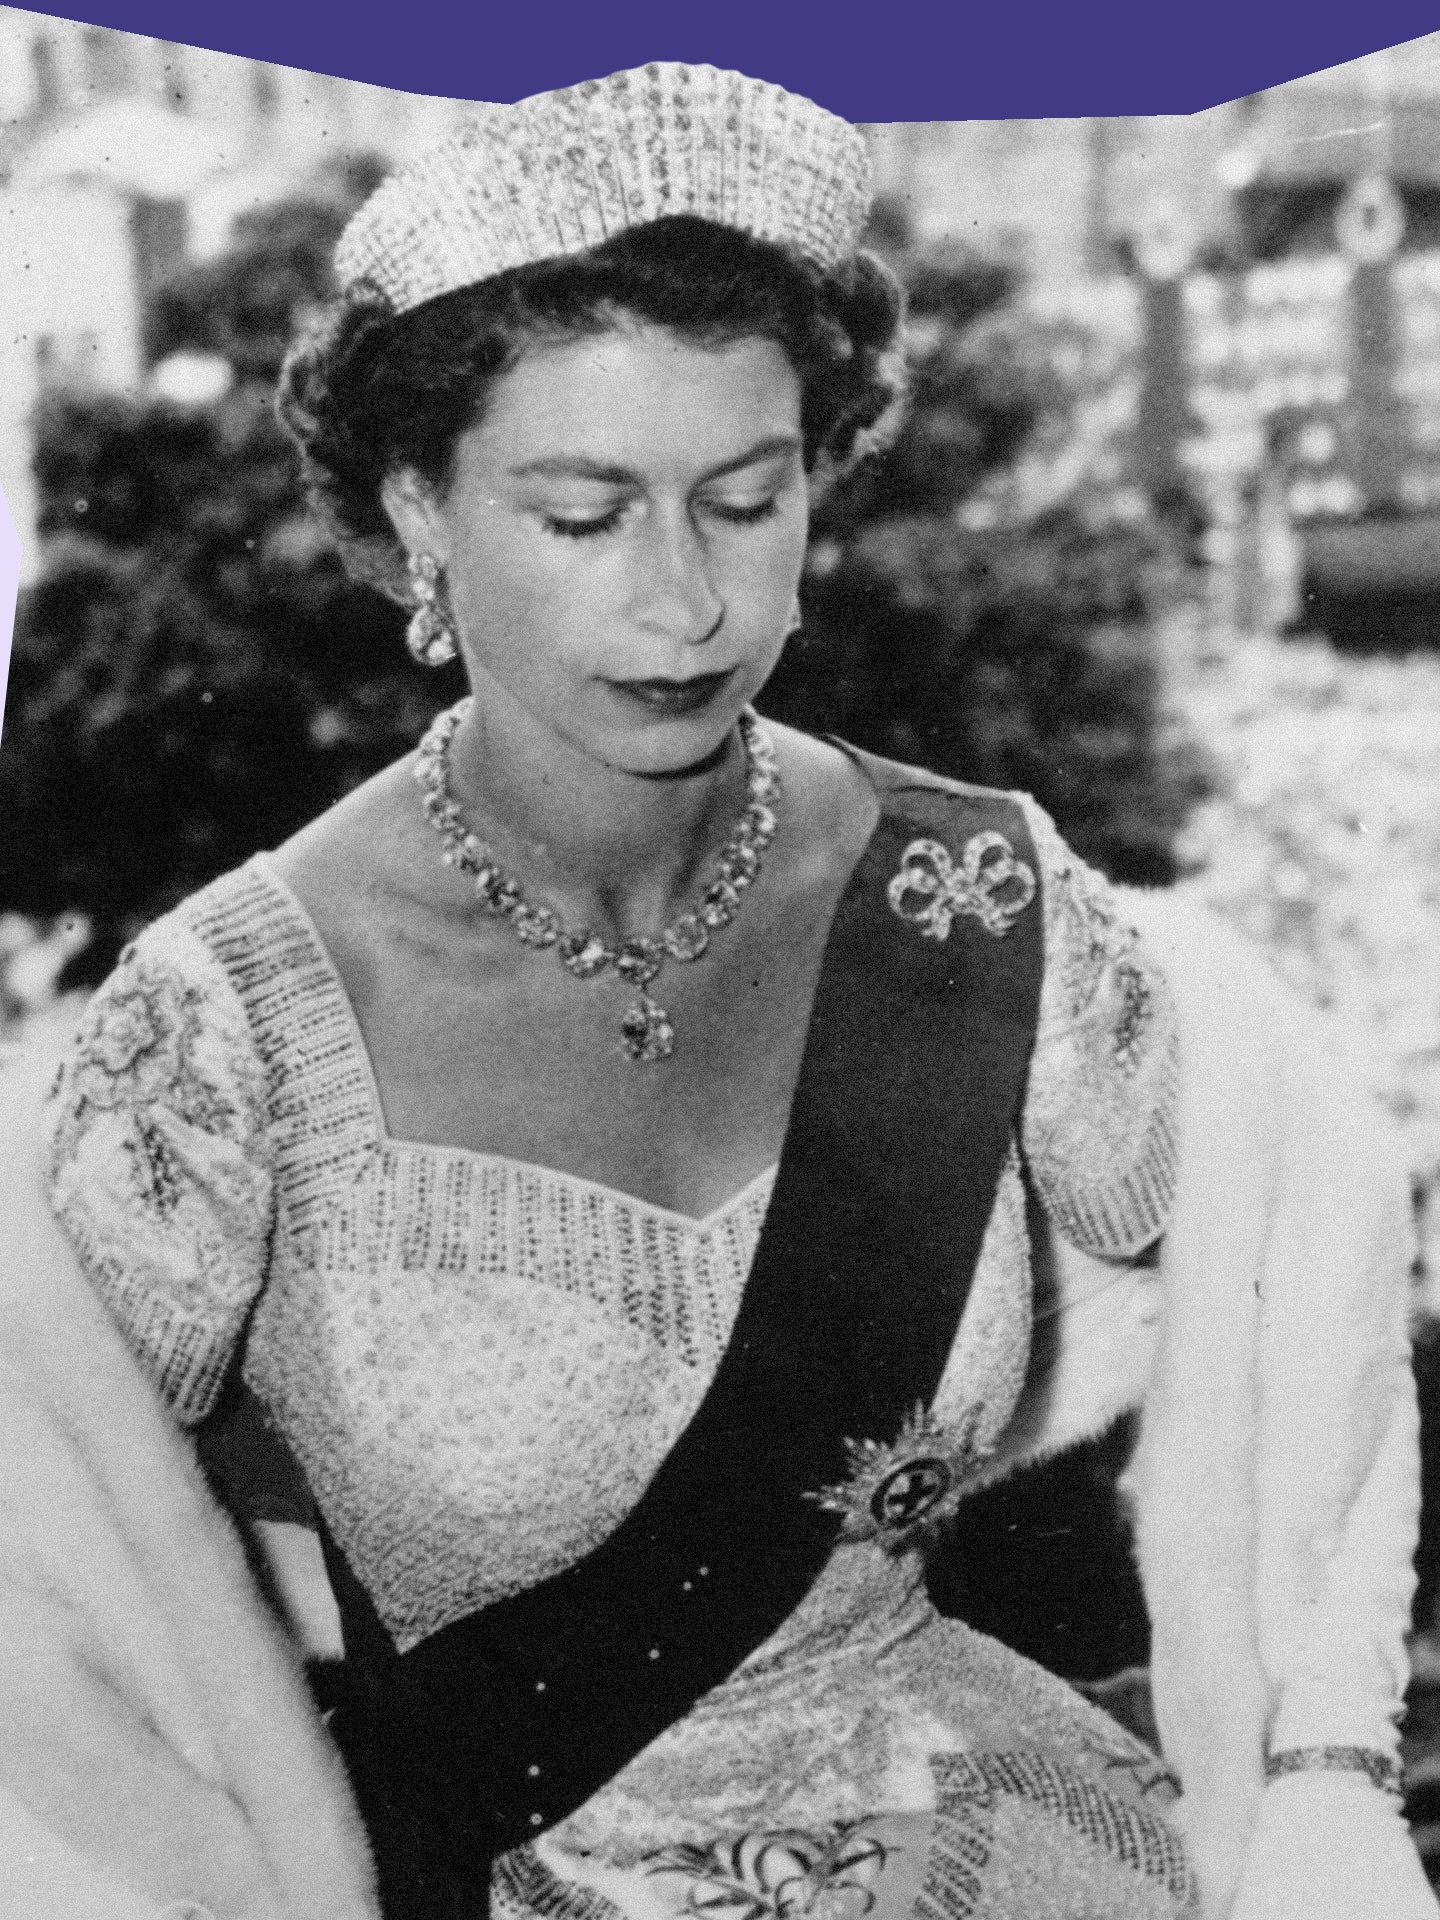 Queen Elizabeth II's Coronation: A Look Back In Photo